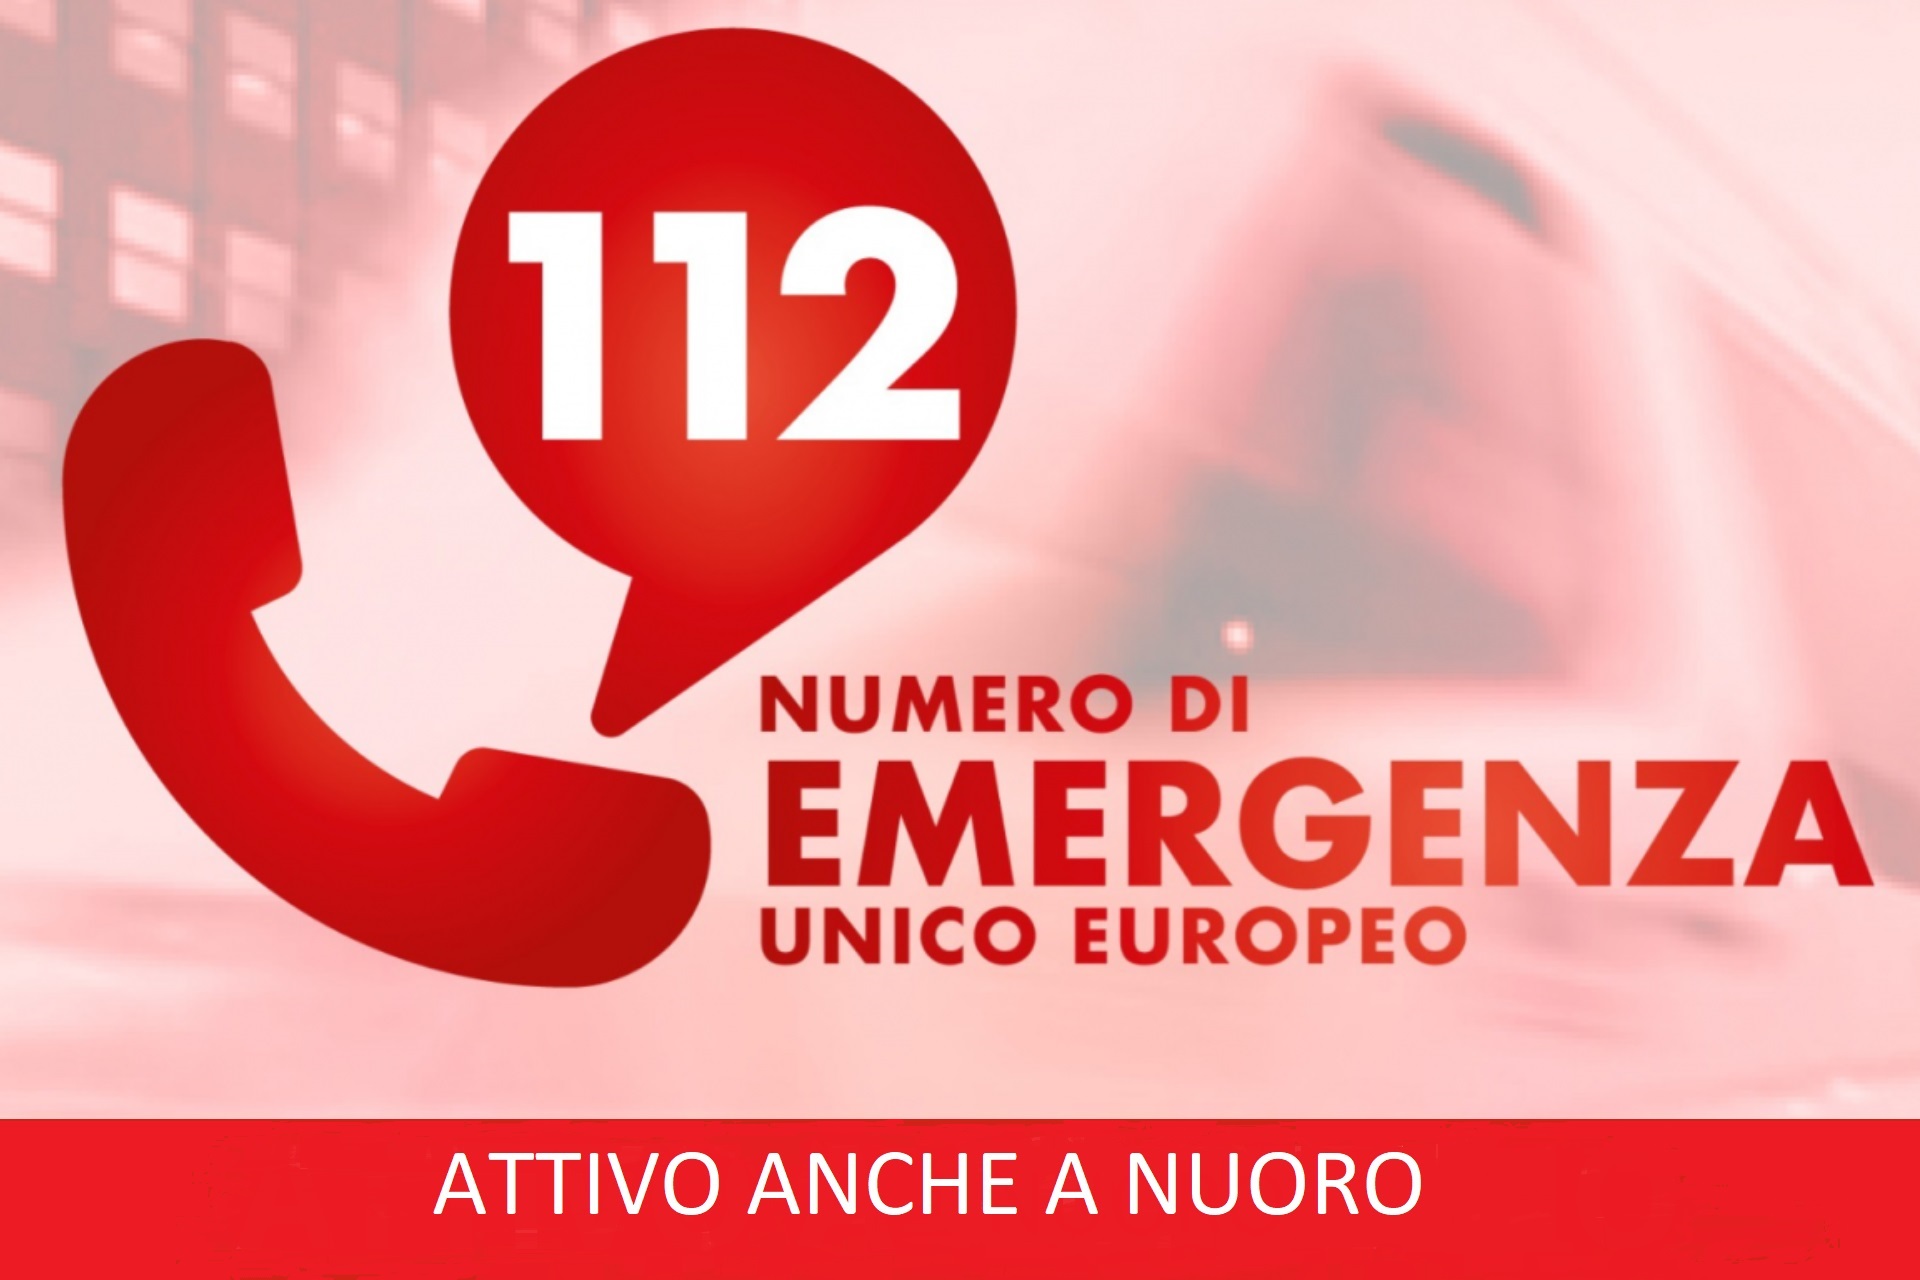 Numero Unico Europeo 112 attivo anche a Nuoro